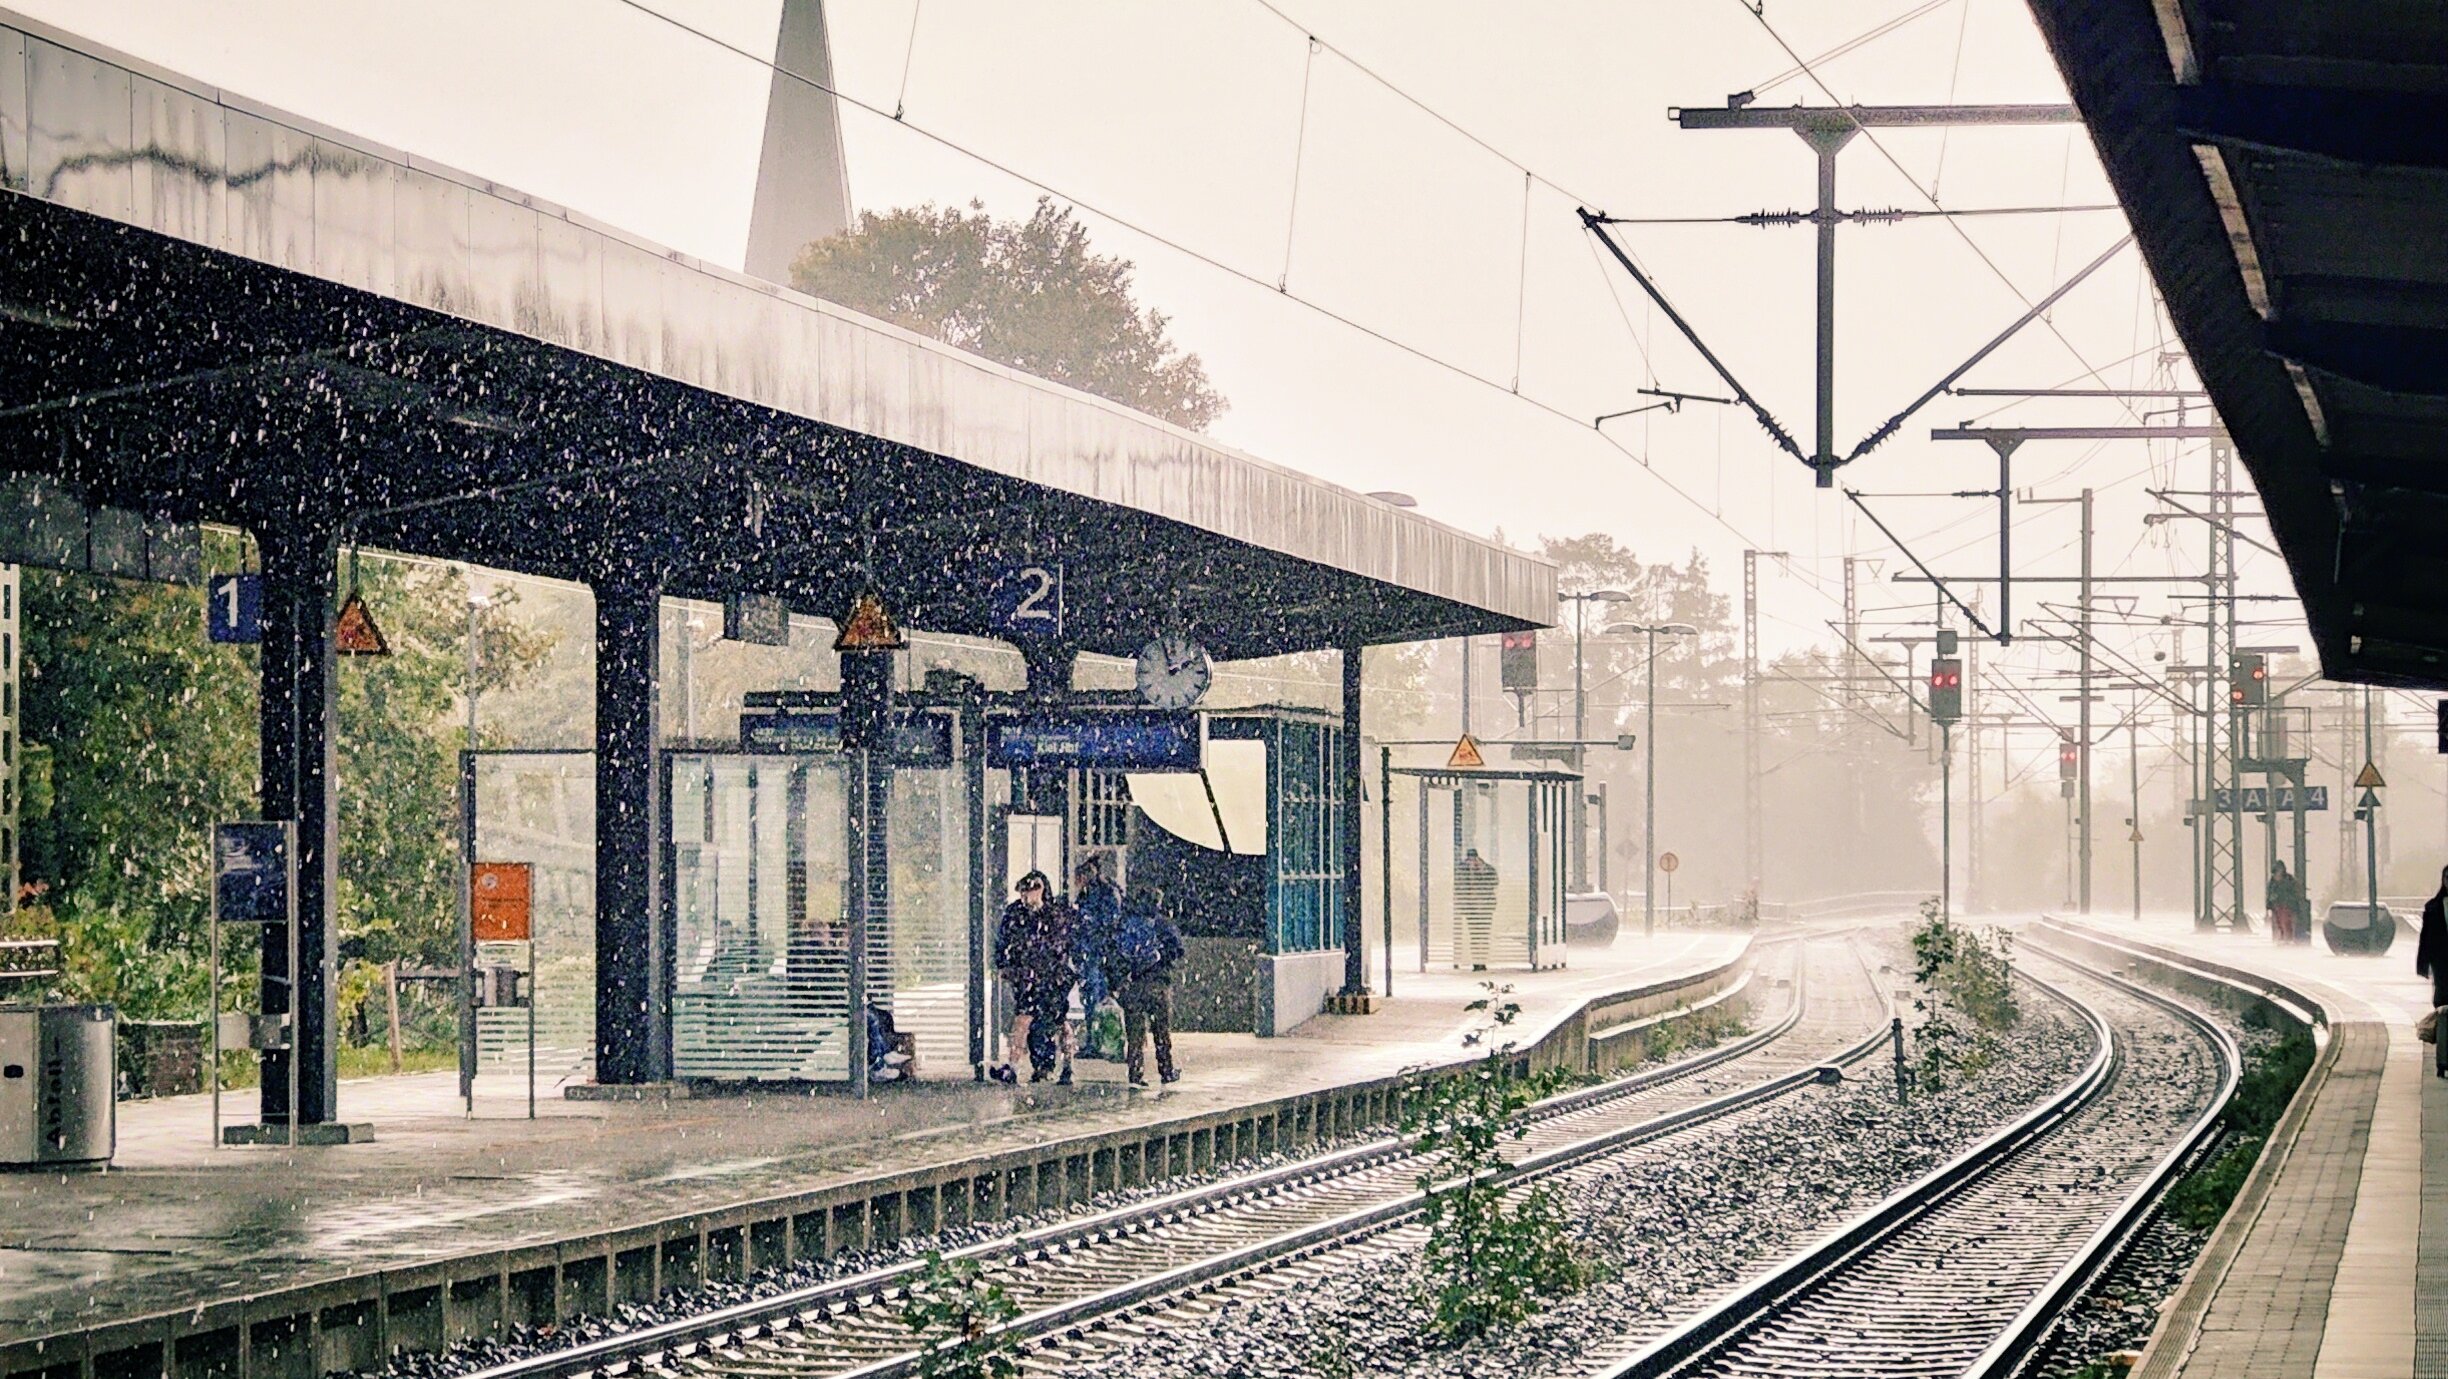 Verregneter Blick auf den Bahnhof von Neumünster